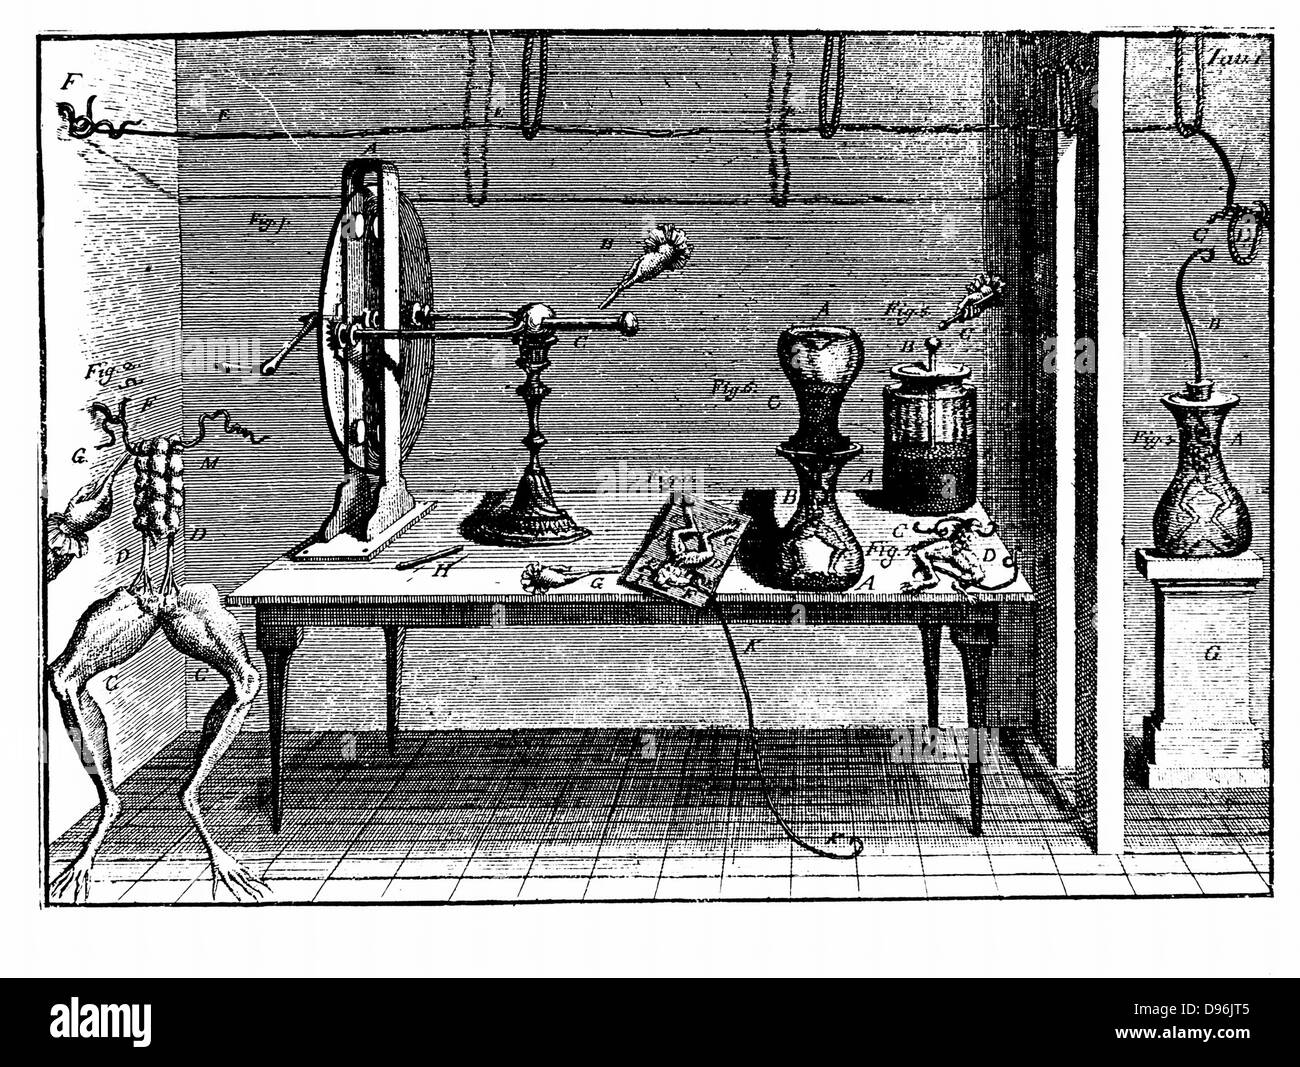 Piastra da Luigi Galvani 'De viribus electricitatis', Bologna, 1791, mostra macchina elettrostatica, bottiglia di Leida, e vari esperimenti condotti da Galvani per analizzare il comportamento dei muscoli stimolati da elettricità. Incisione Foto Stock